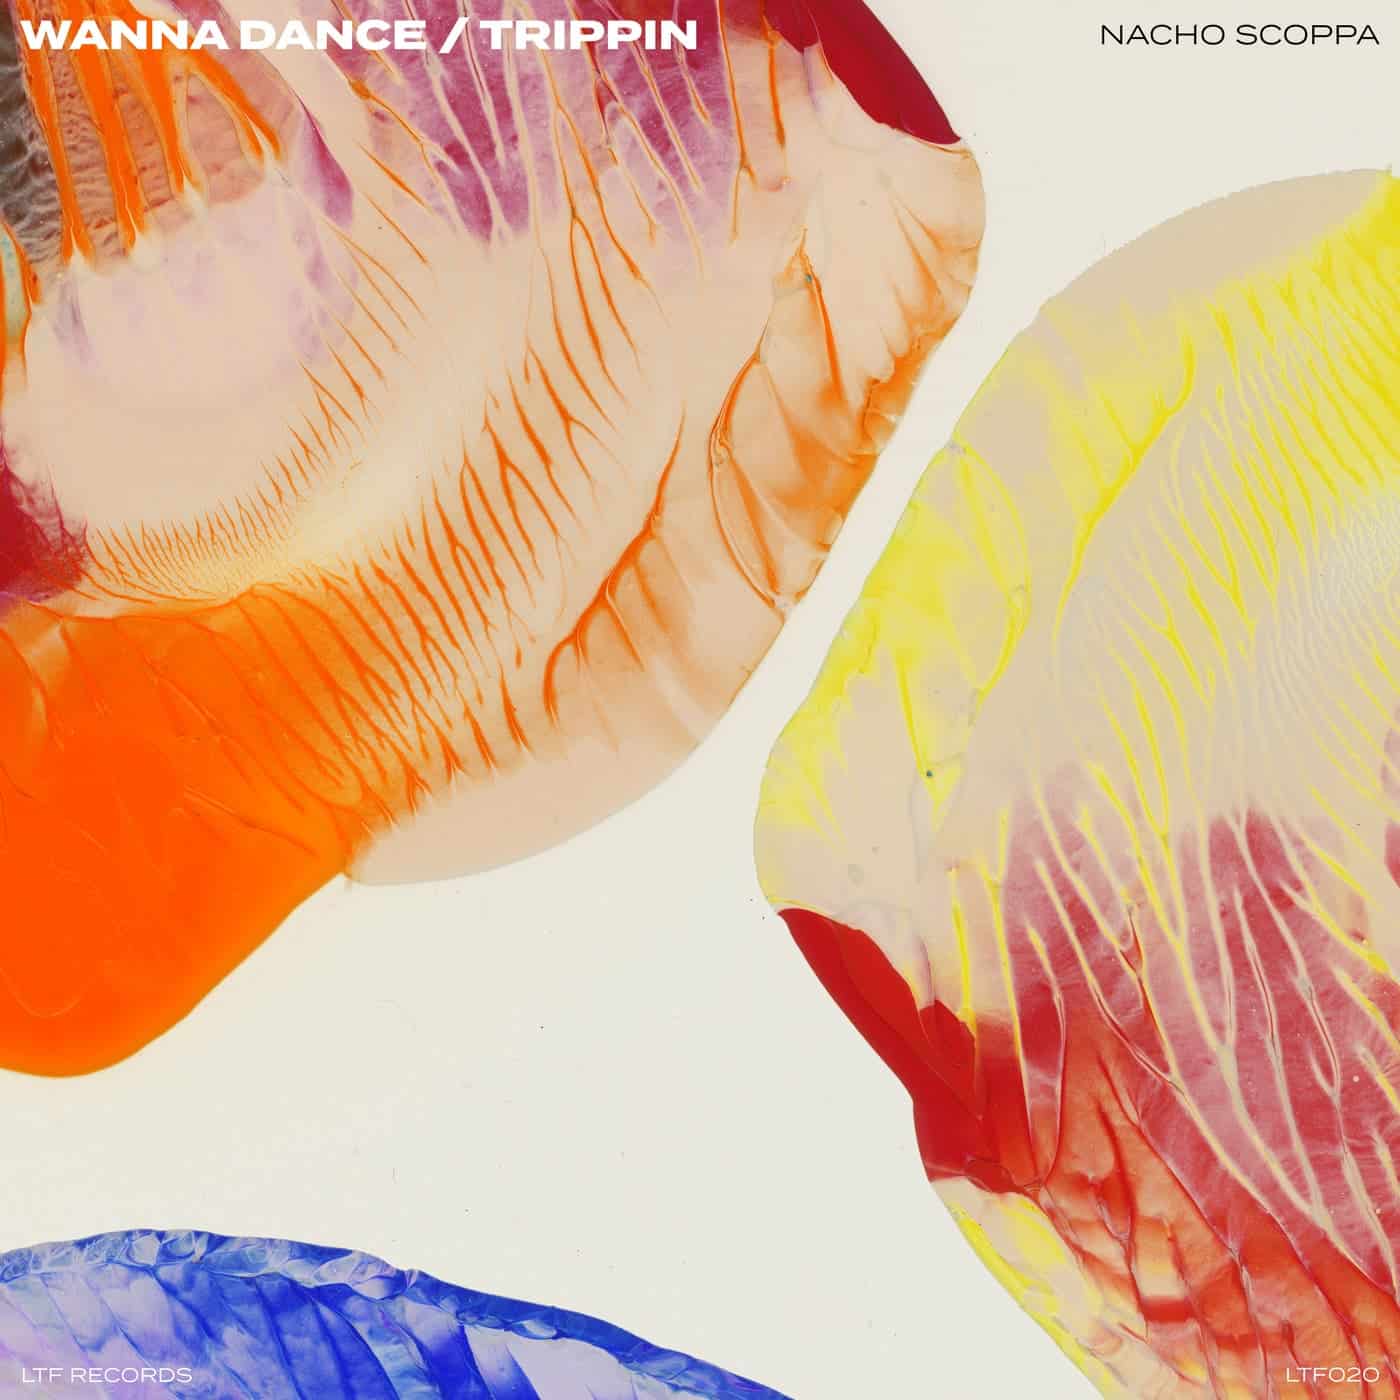 Download Nacho Scoppa - Wanna Dance / Trippin' on Electrobuzz